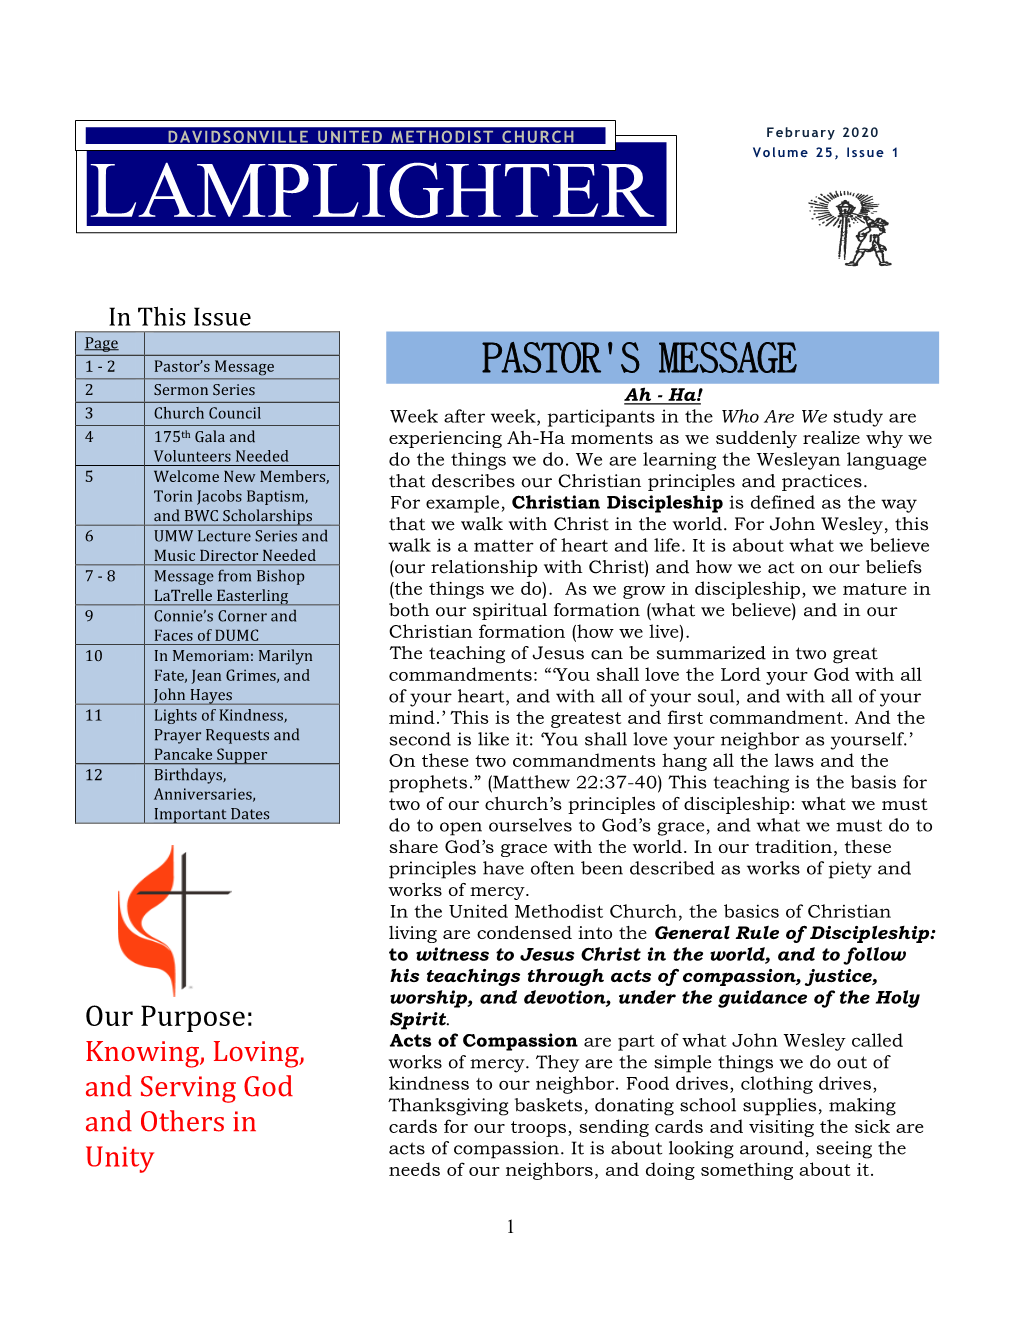 February 2020 Lamplighter